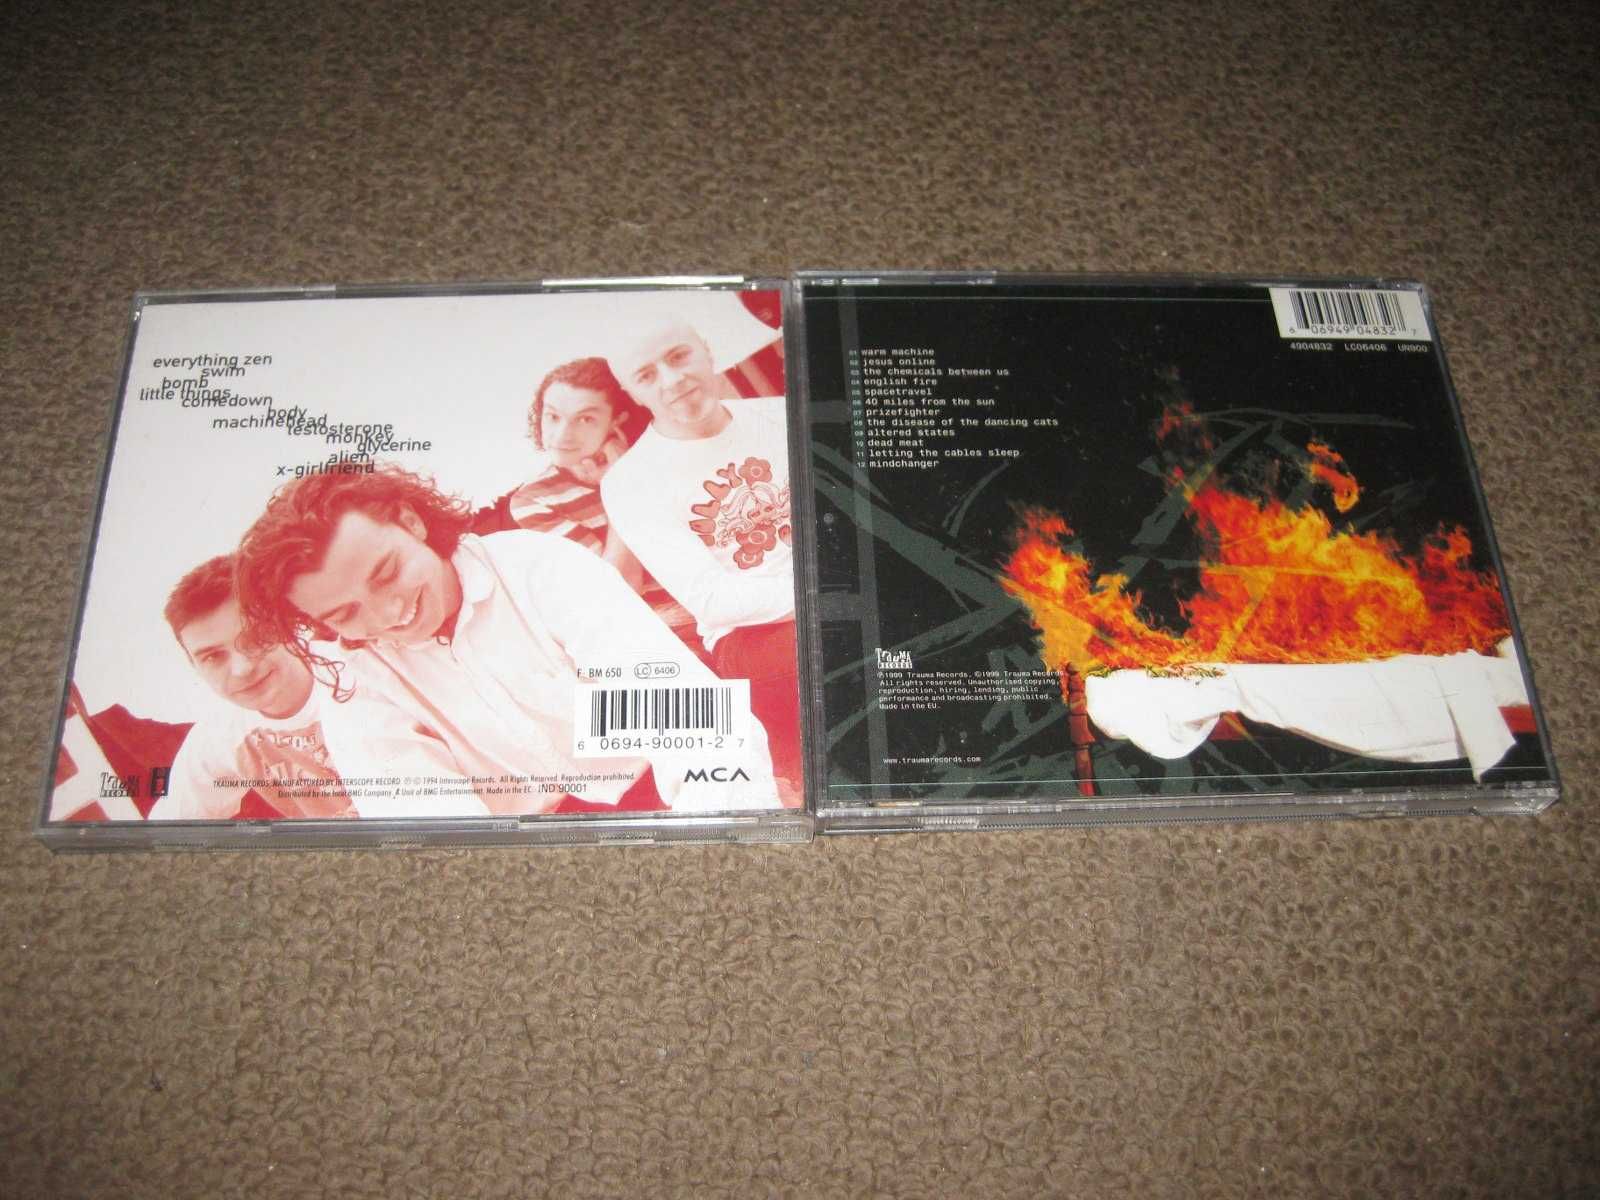 2 CDs dos "Bush" Portes Grátis!